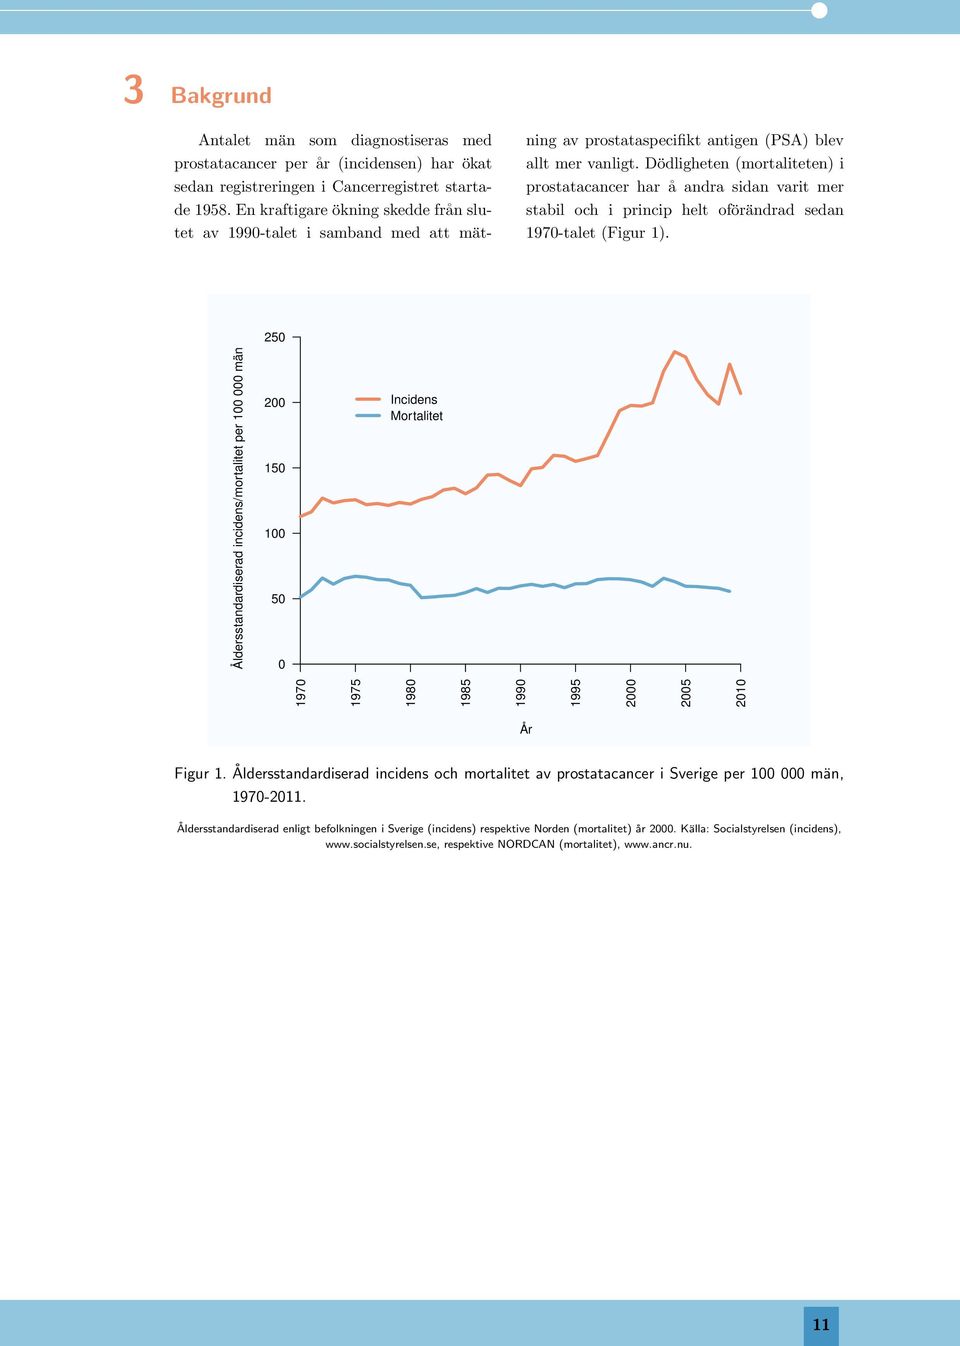 Dödligheten (mortaliteten) i prostatacancer har å andra sidan varit mer stabil och i princip helt oförändrad sedan 197-talet (Figur 1).